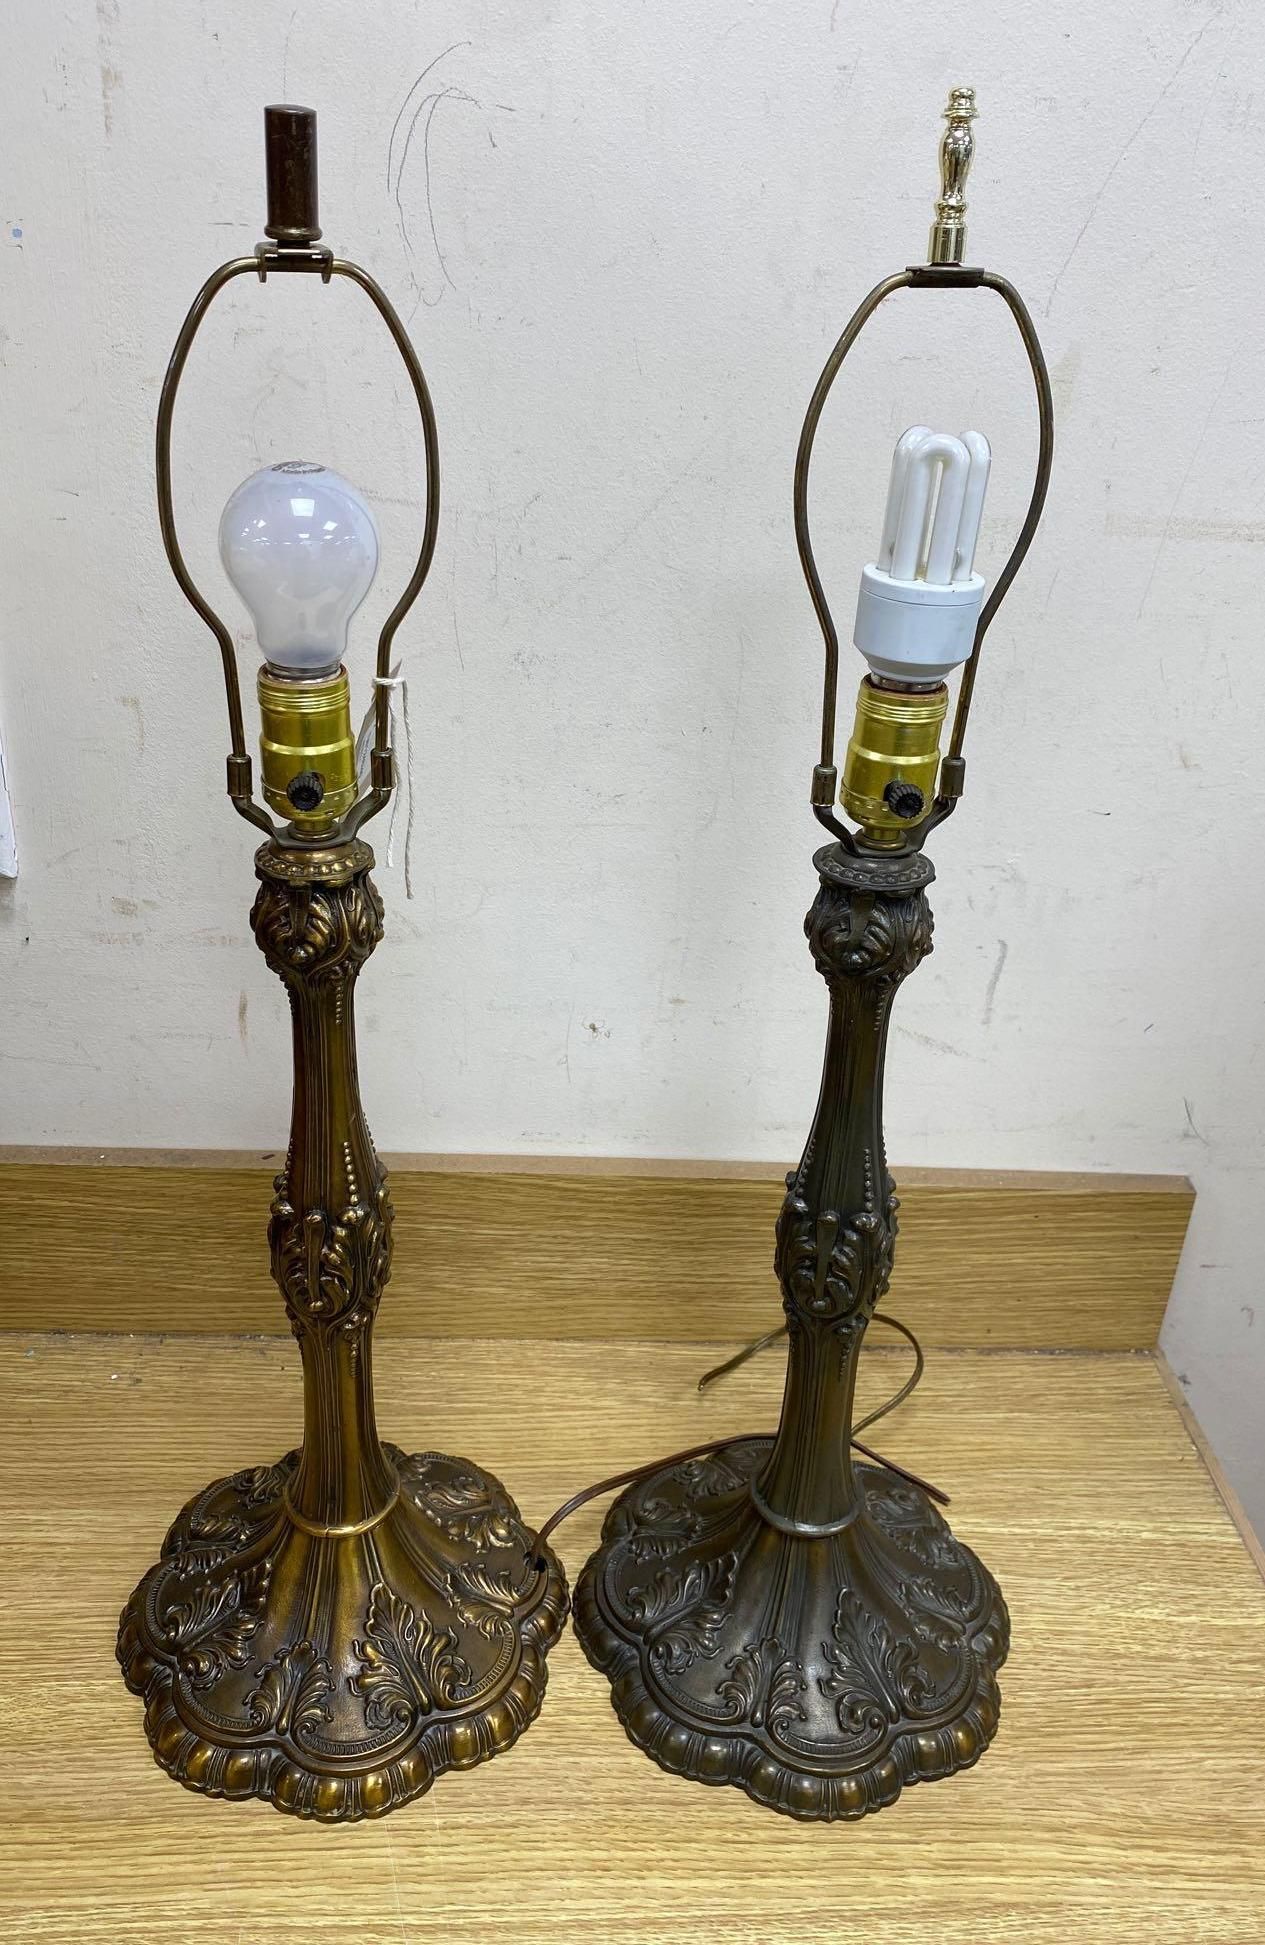 A pair of brass Art Nouveau style lamps